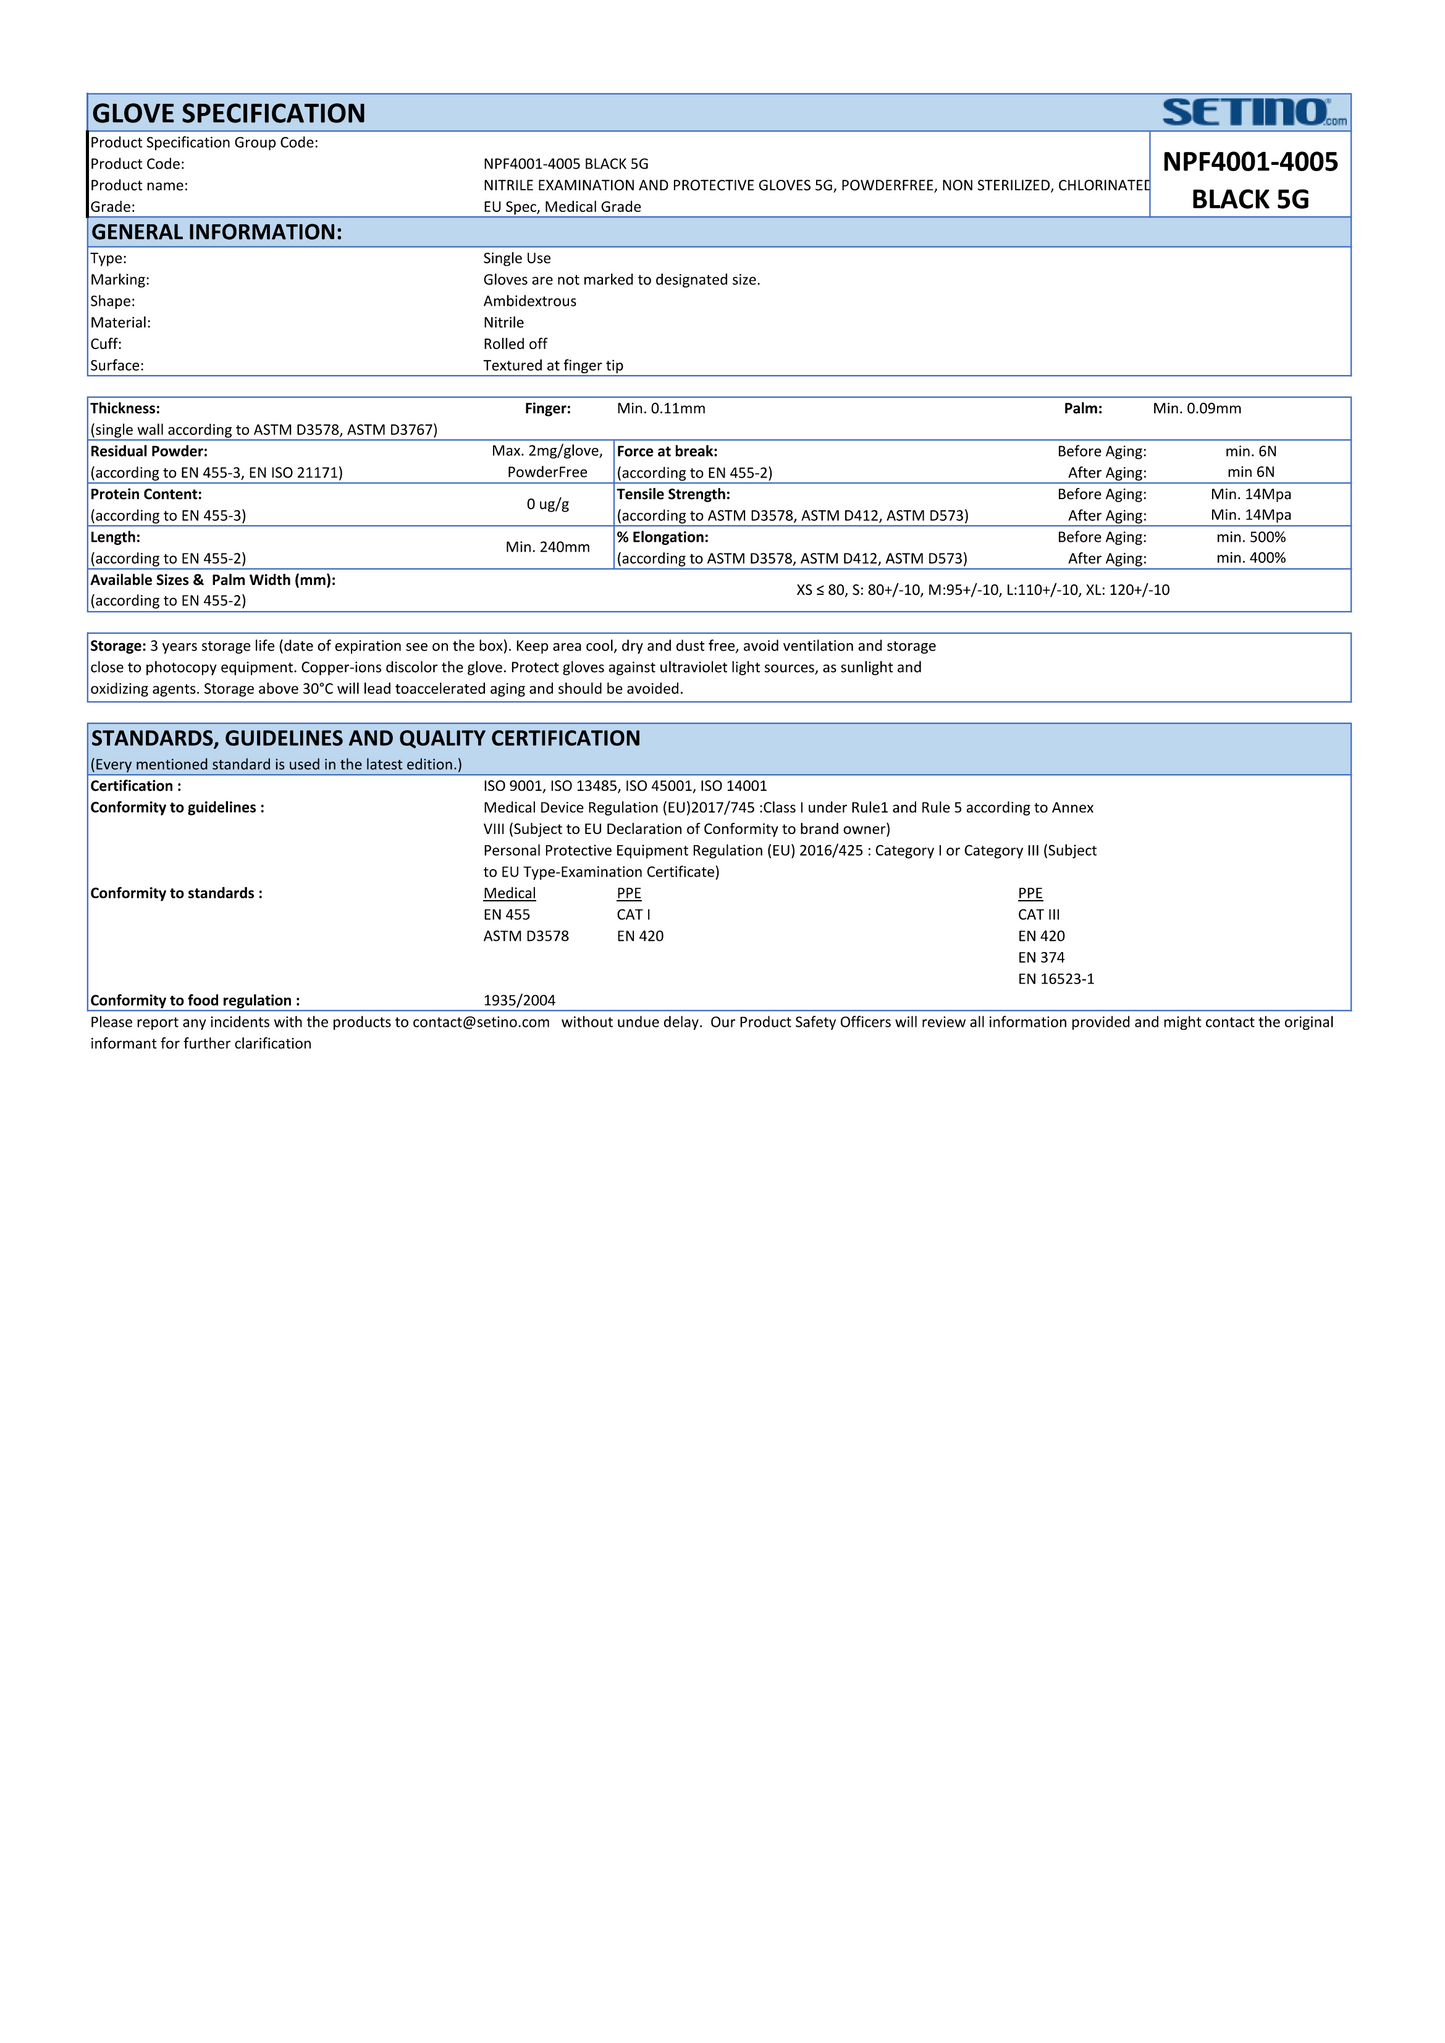 NPF4001-4005 nitriilinen tutkimus- ja suojakäsine jauheeton musta 5 grammaa